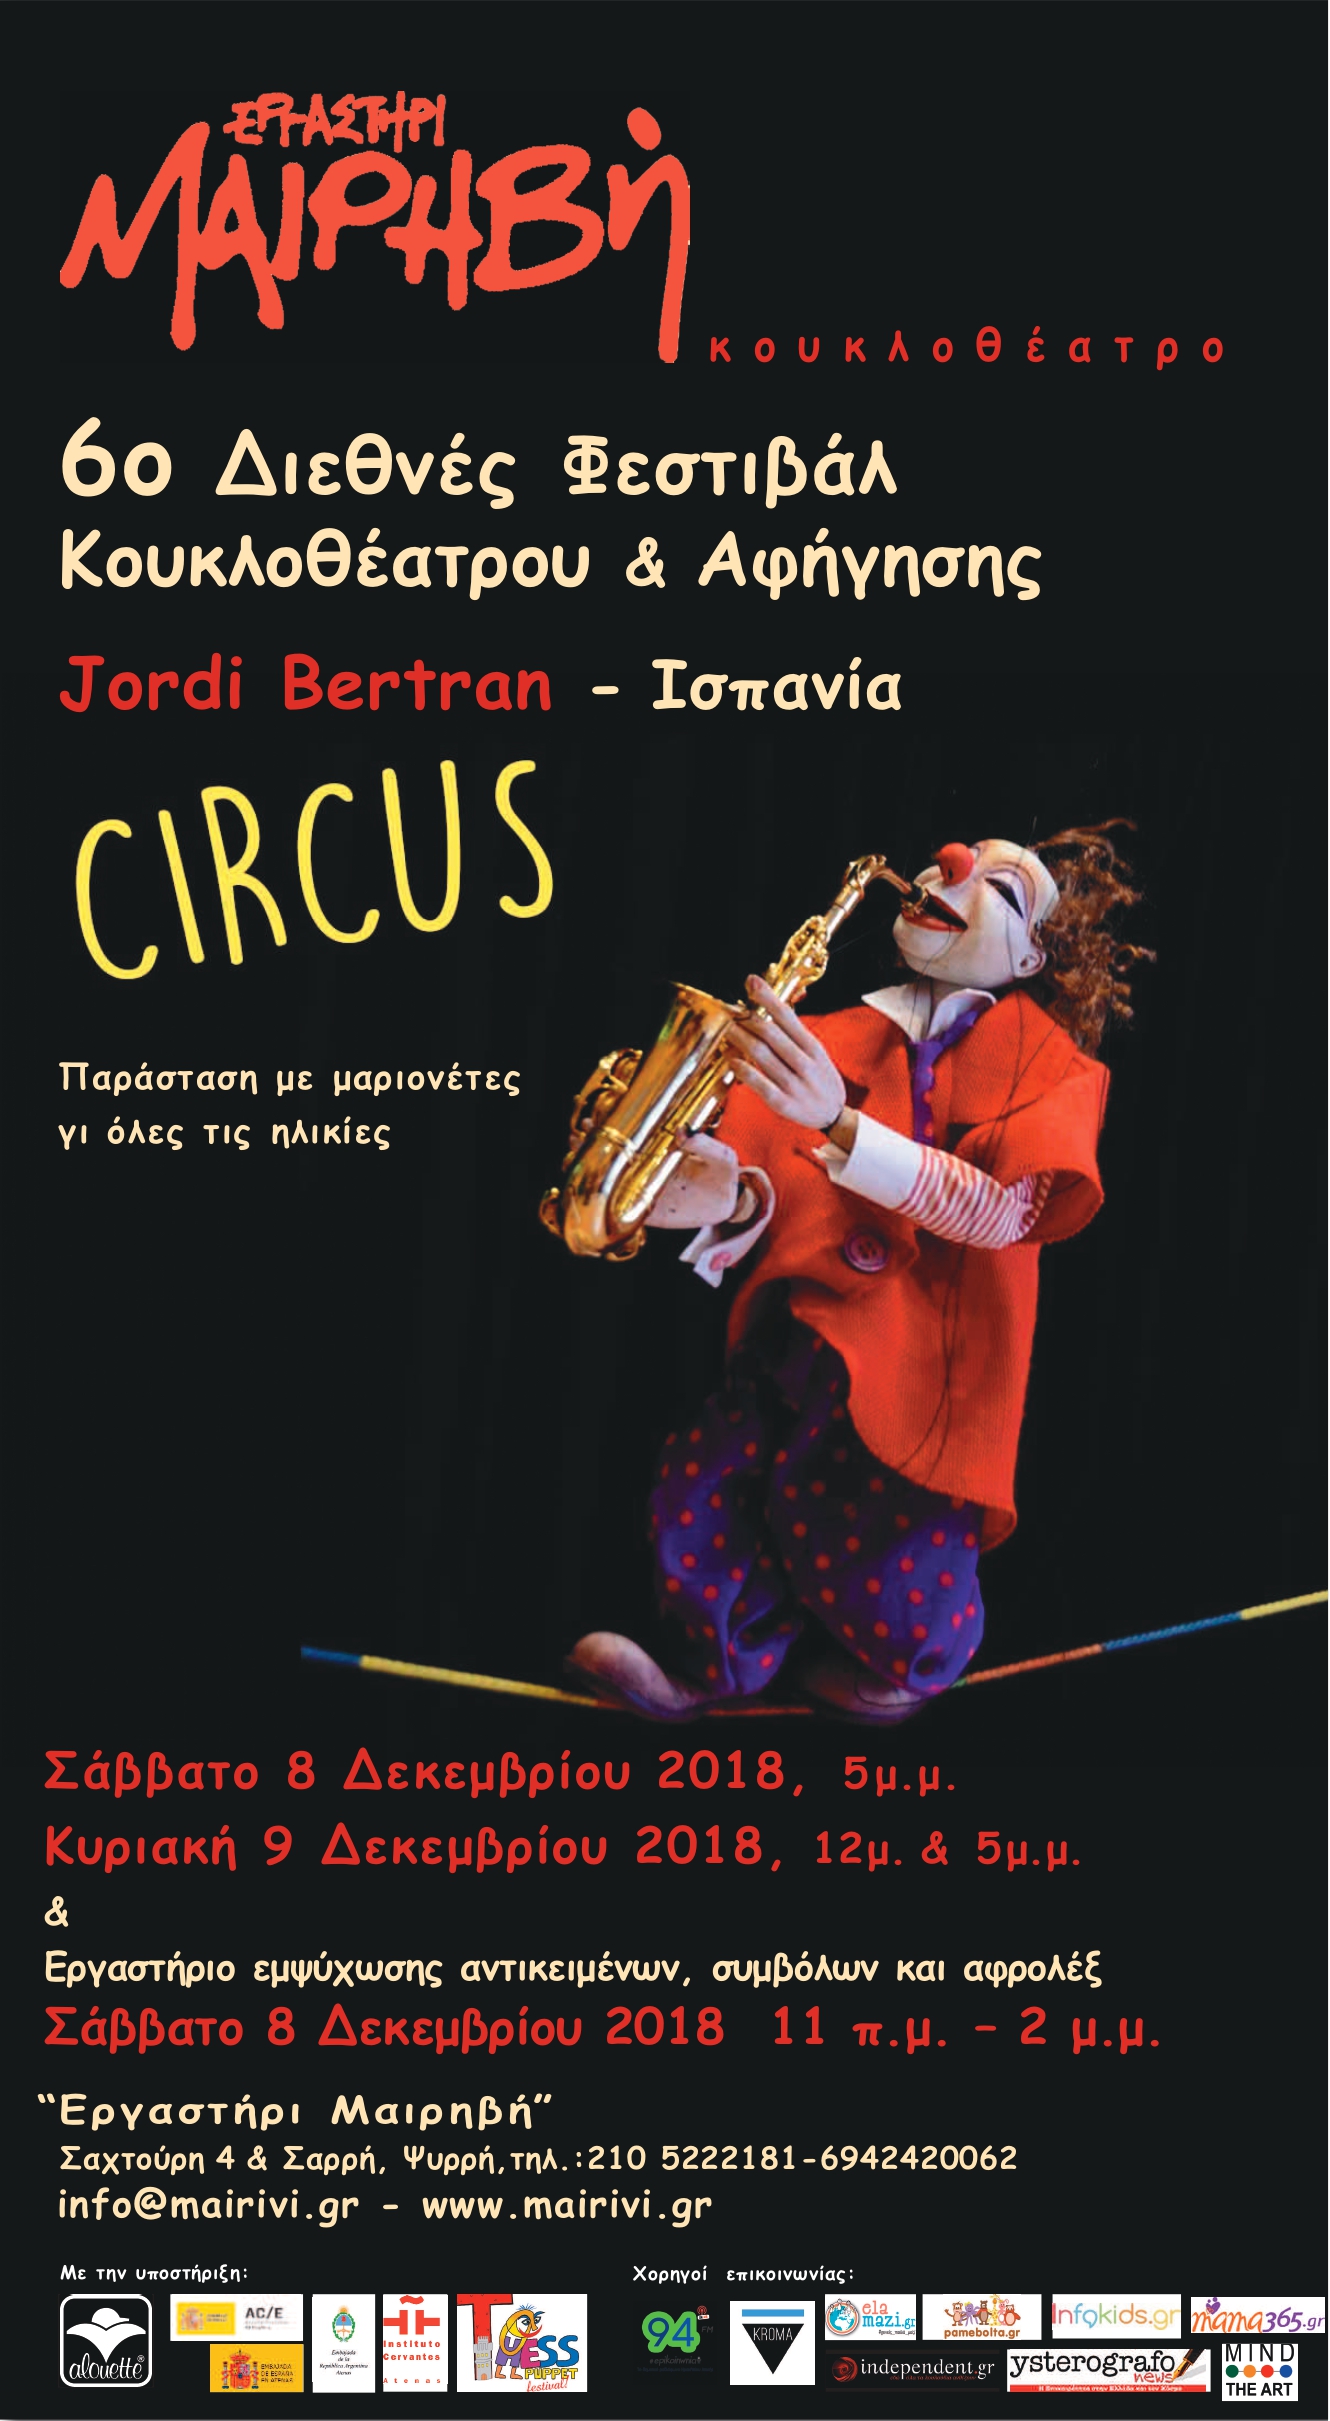 6ο Διεθνές Φεστιβάλ Κουκλοθέατρου και Αφήγησης στην Αθήνα (Οκτώβριος 2018 - Μάιος 2019)